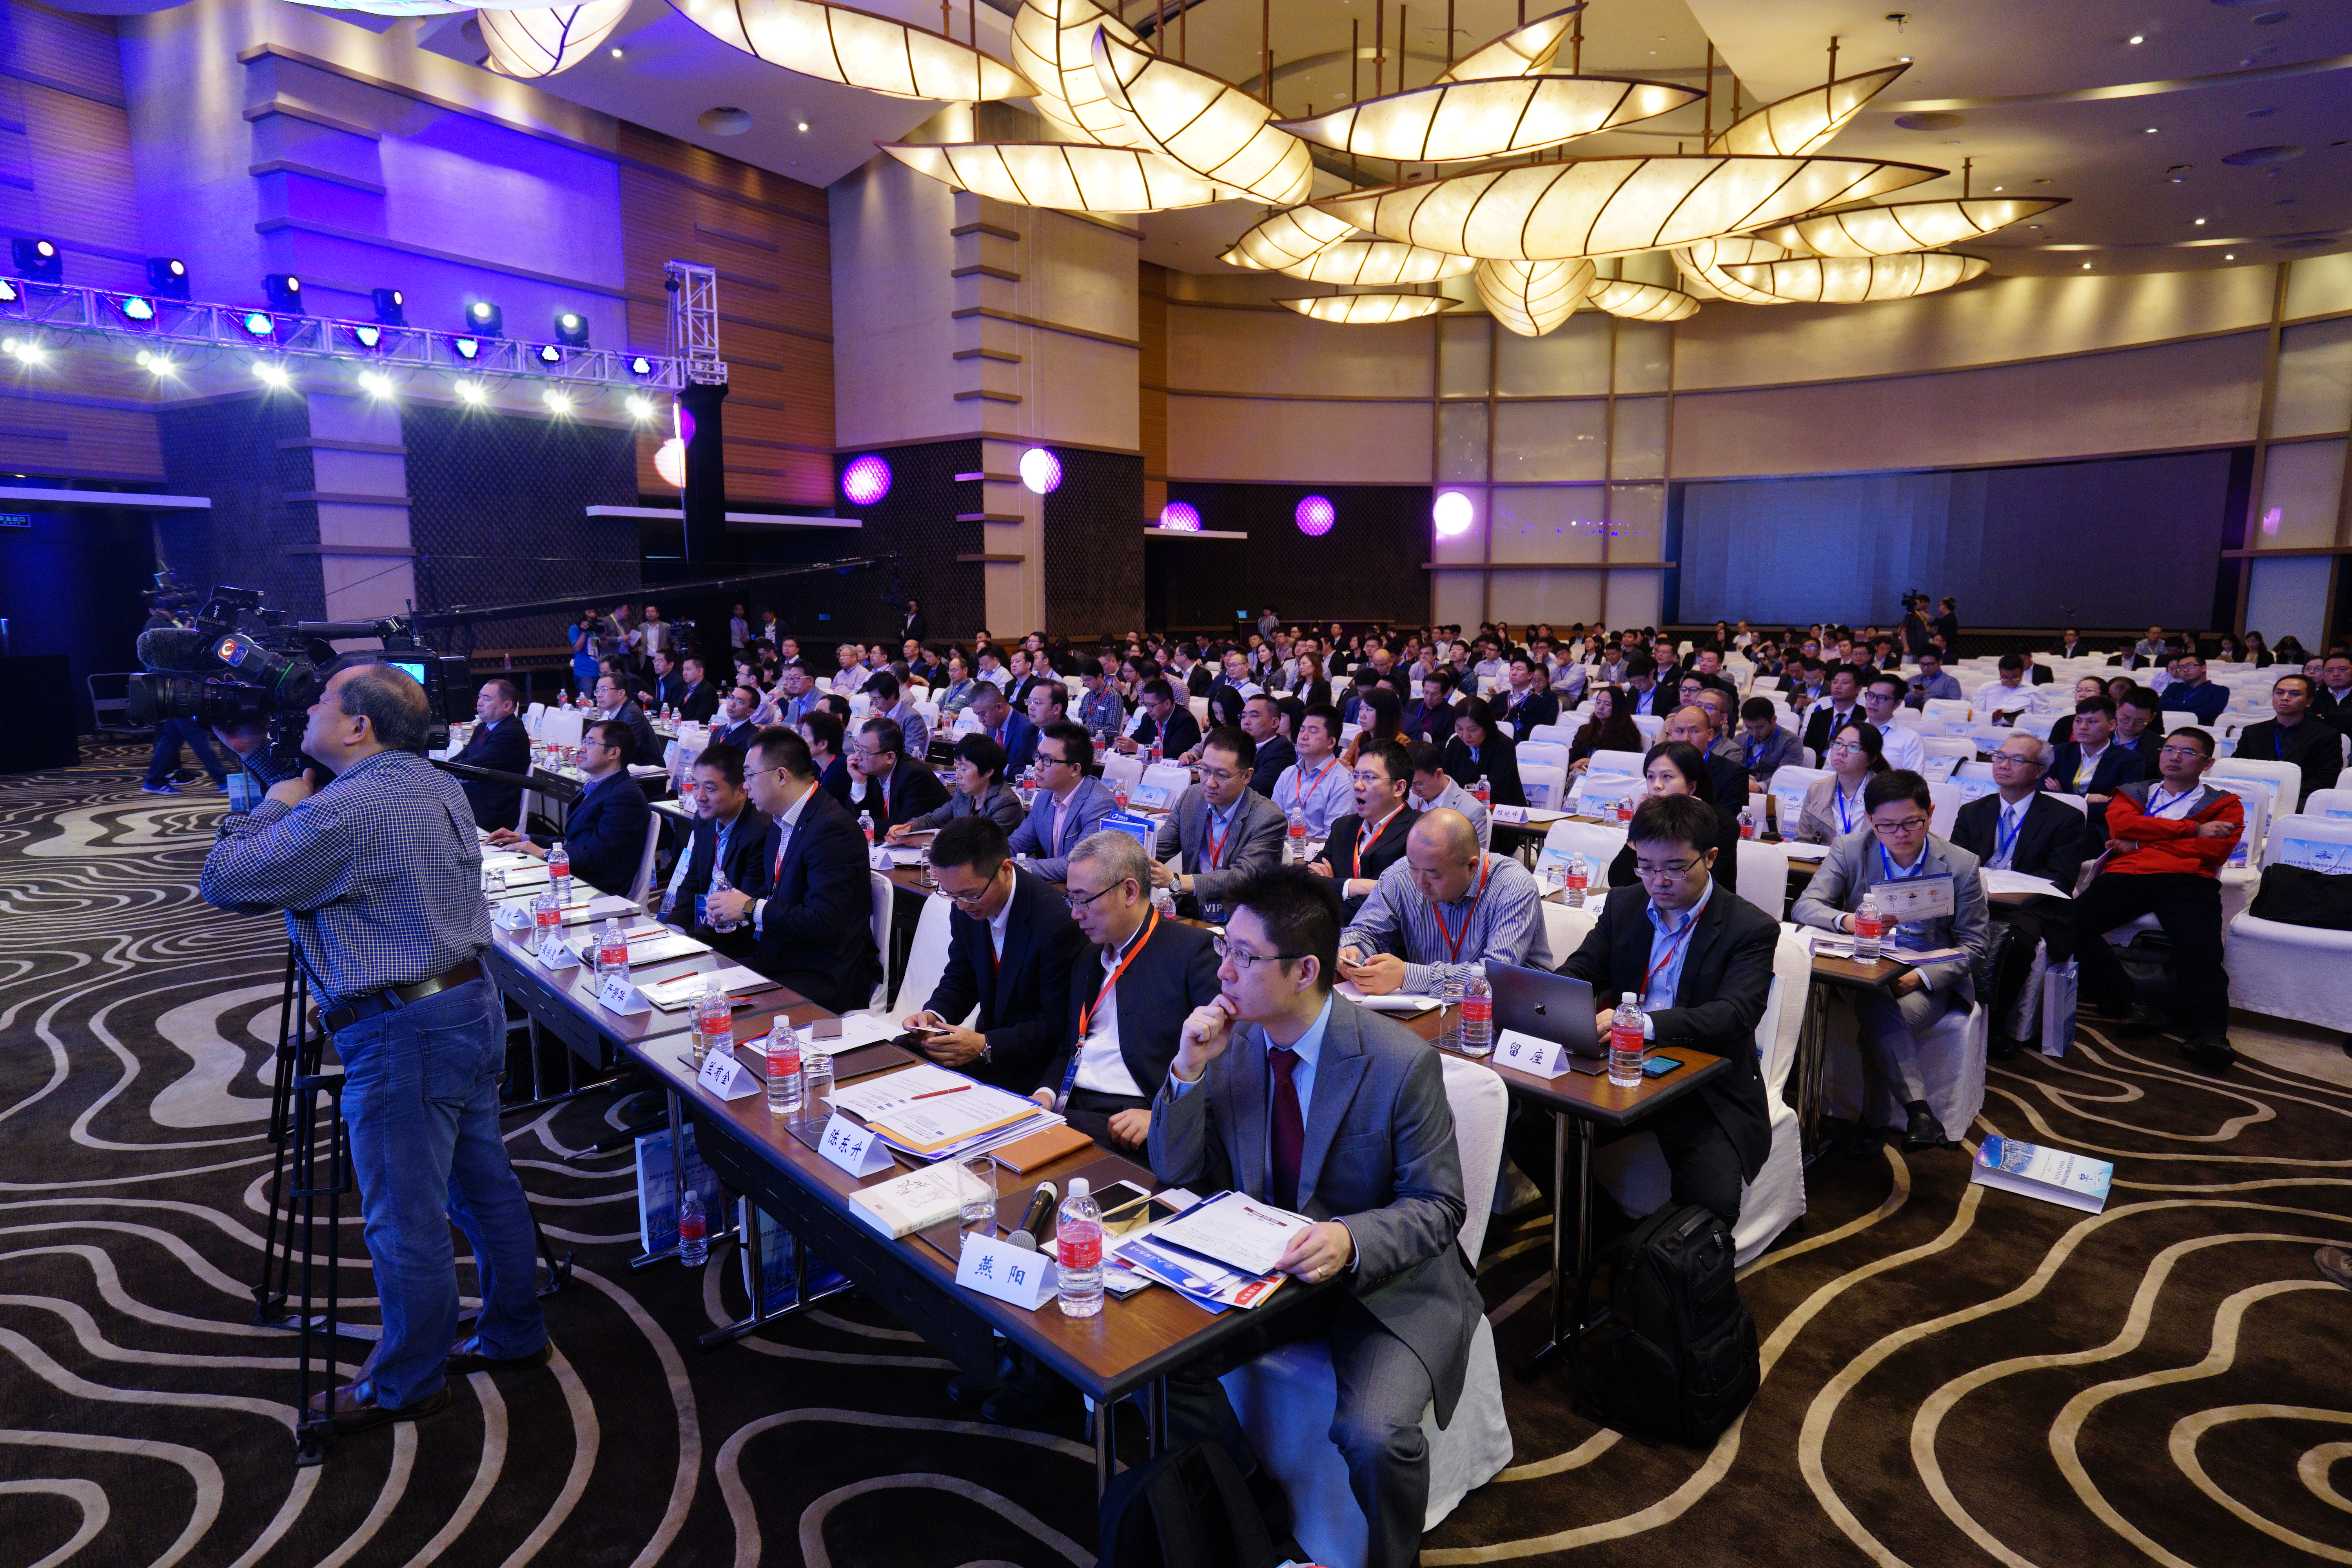 2016中国北外滩对冲基金峰会召开  大数据智能投资成焦点